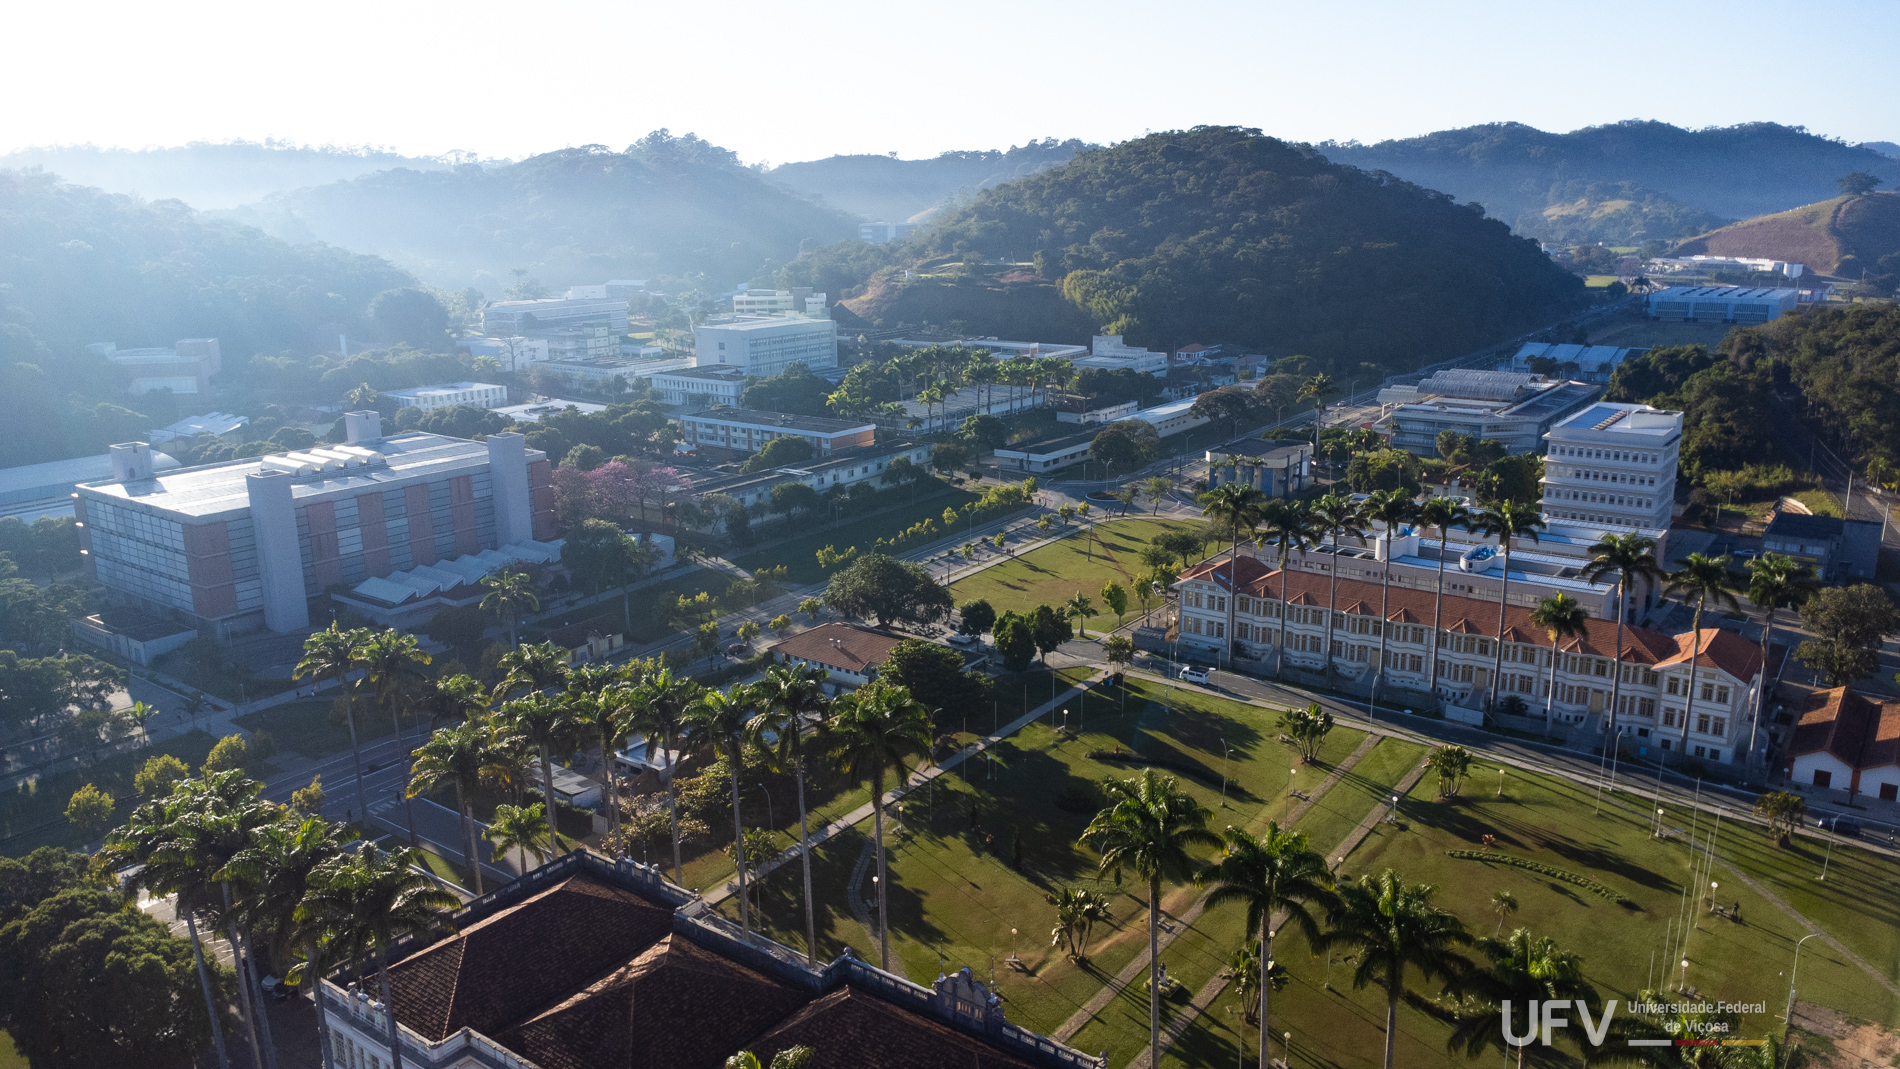 Foto aérea do campus Viçosa da UFV. Vê-se parte da avenida principal, a biblioteca central, palmeiras e um dos alojamentos. 